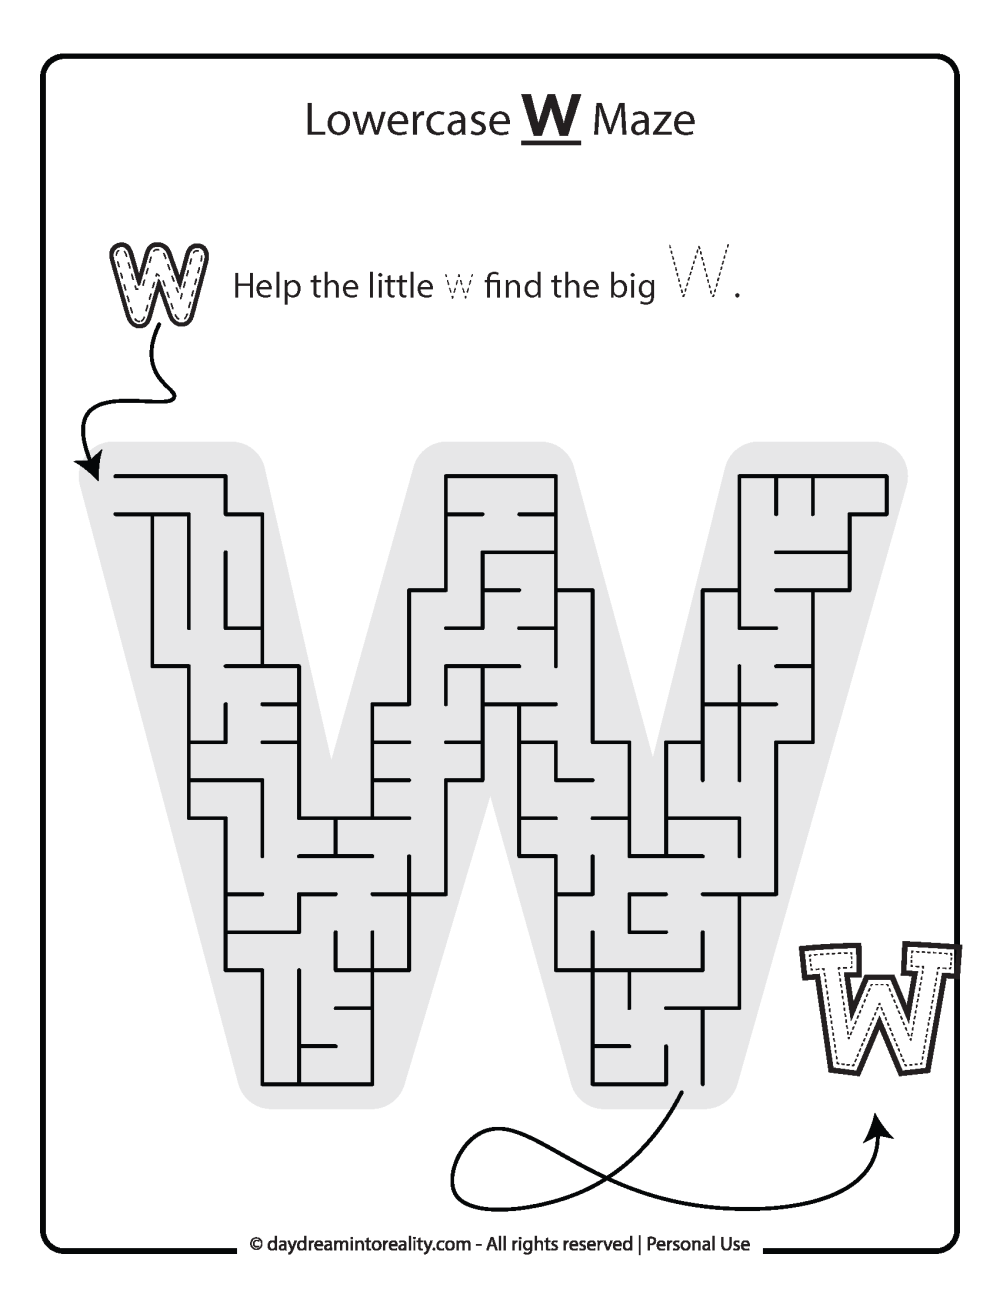 Lowercase "w" Maze Free Printable